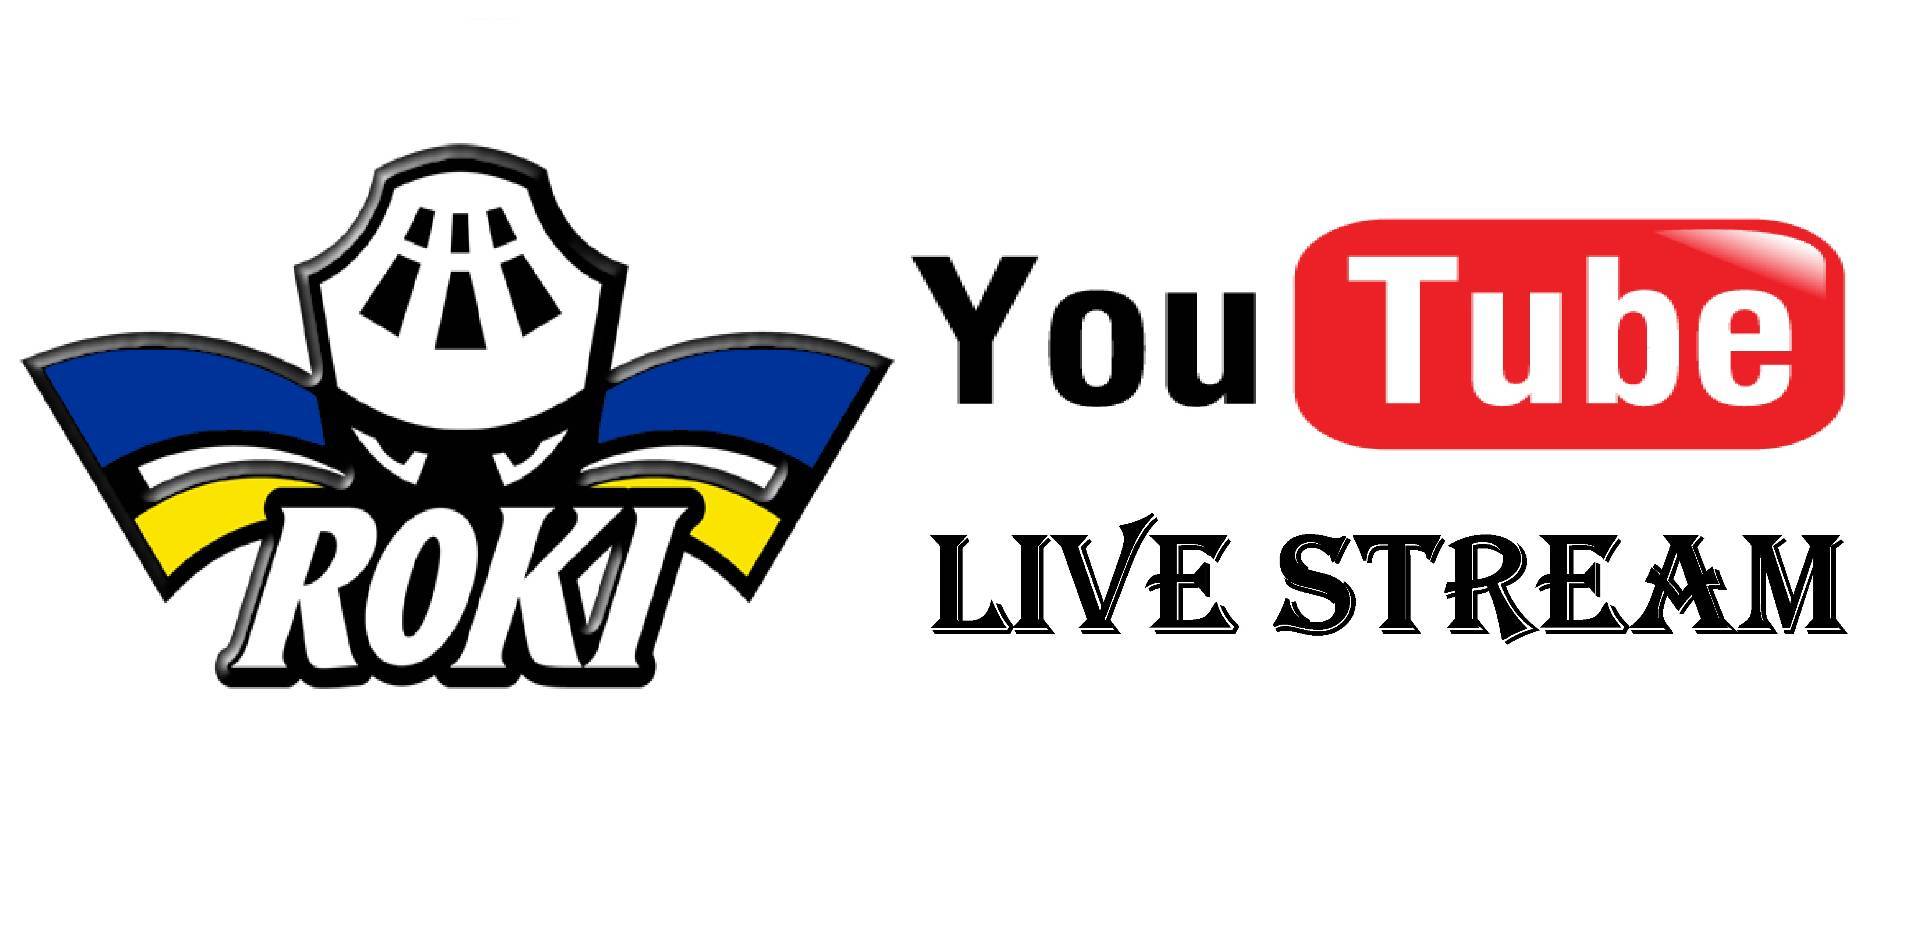 Live stream -pelit Rokin Youtube -kanavalla - viikonloppuna 6 peliä livenä